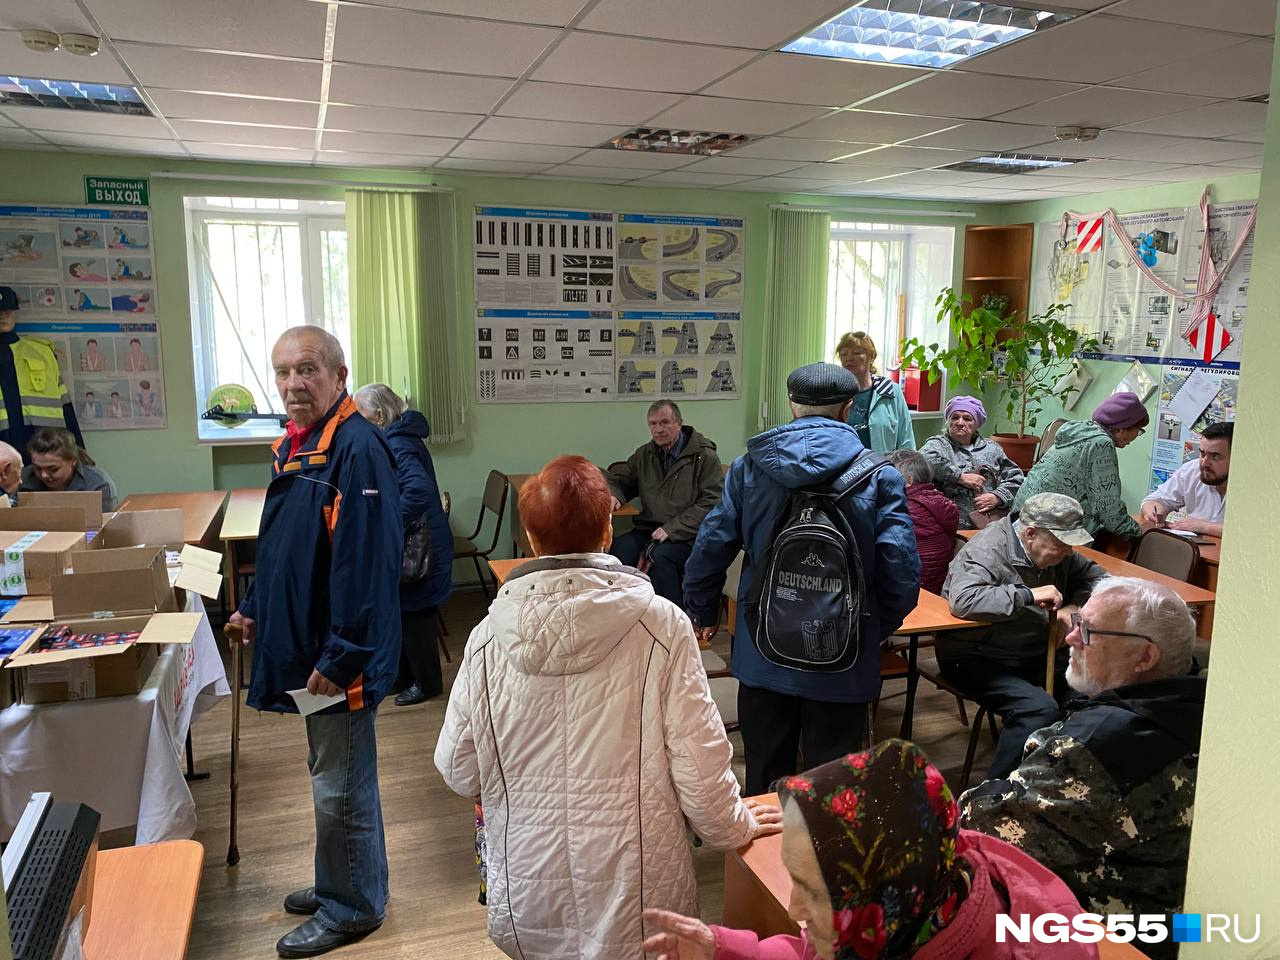 Пенсионеры скупают чудо-средства в Омске: что это за эликсиры и кто на этом зарабатывает